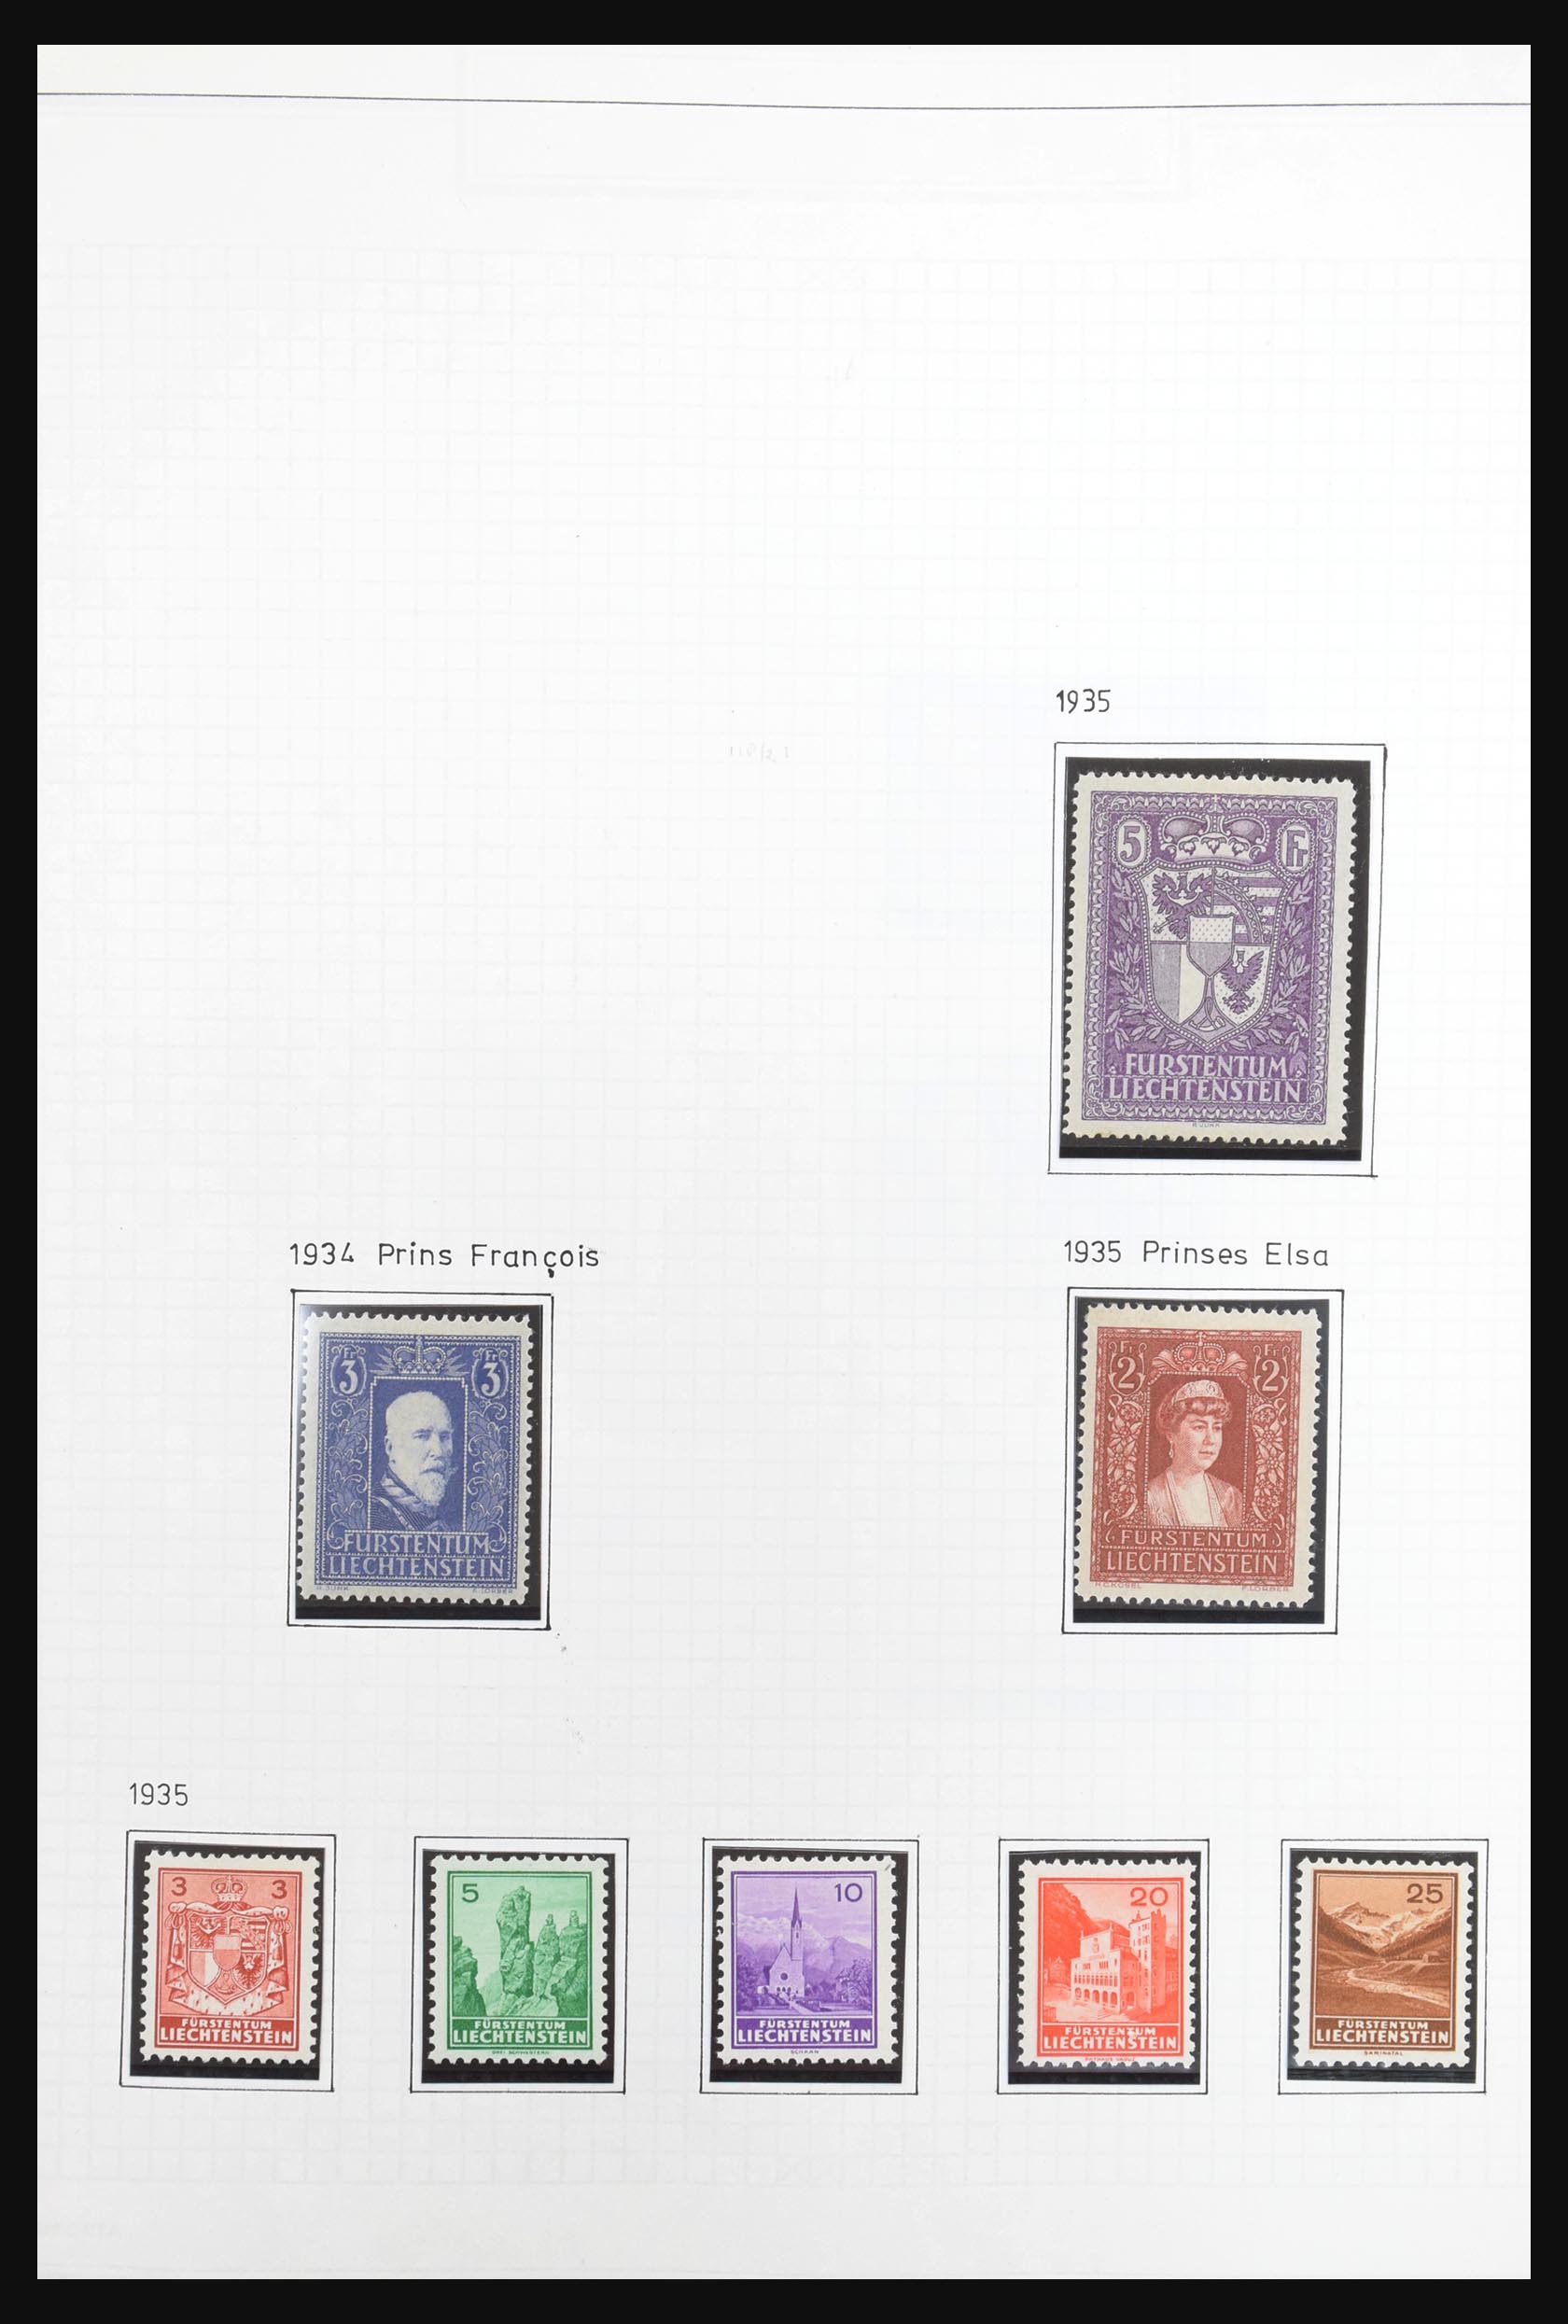 31131 011 - 31131 Liechtenstein 1912-2013.